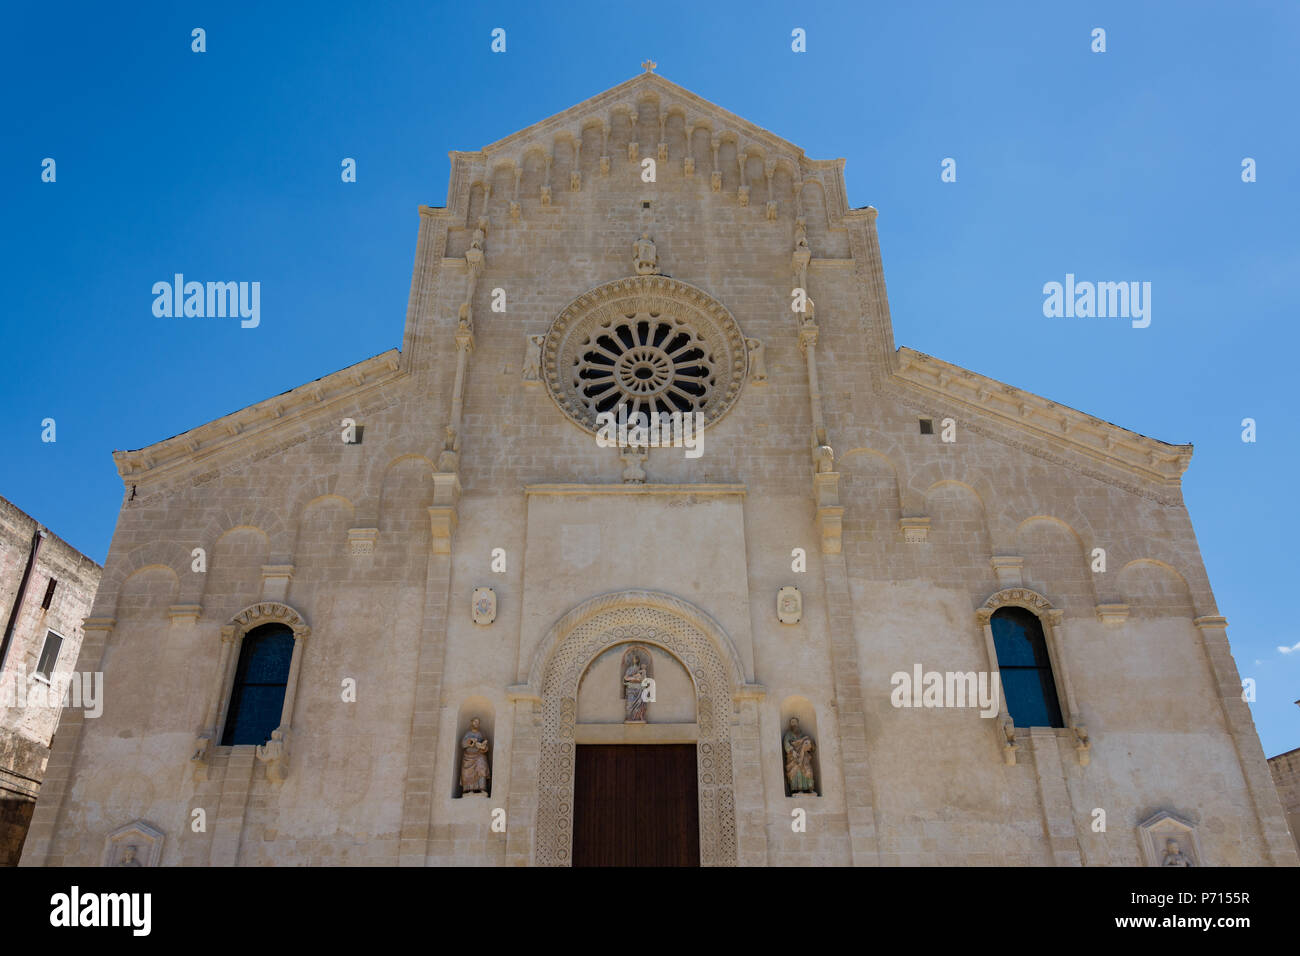 MATERA, ITALIE 12 Août 2017 - Vue de la cathédrale de Matera sous ciel bleu. Matera en Italie l'UNESCO Capitale Européenne de la Culture 2019 Banque D'Images